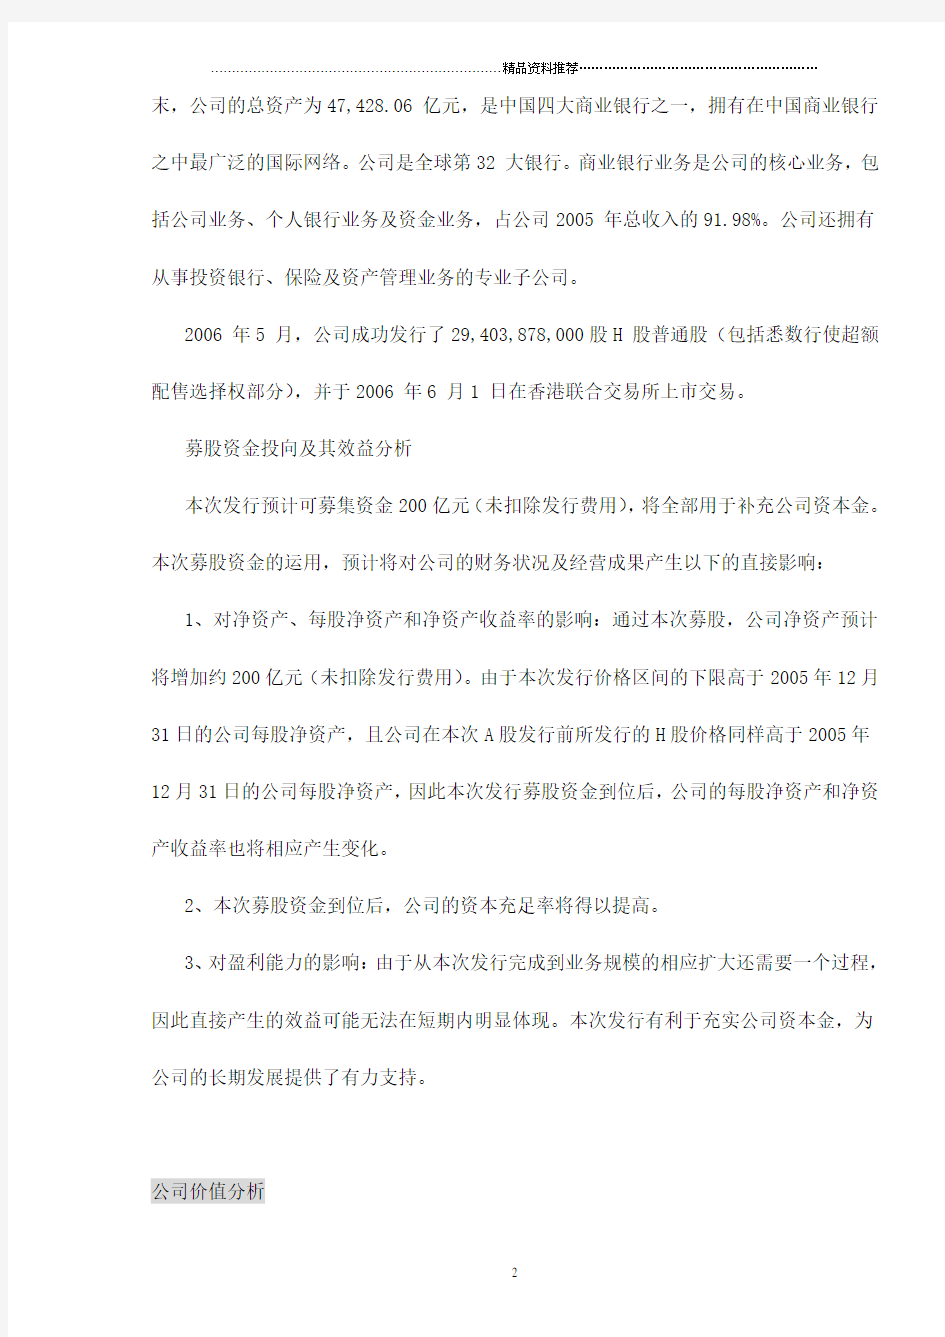 中国银行(601988)定位分析报告doc11(1)